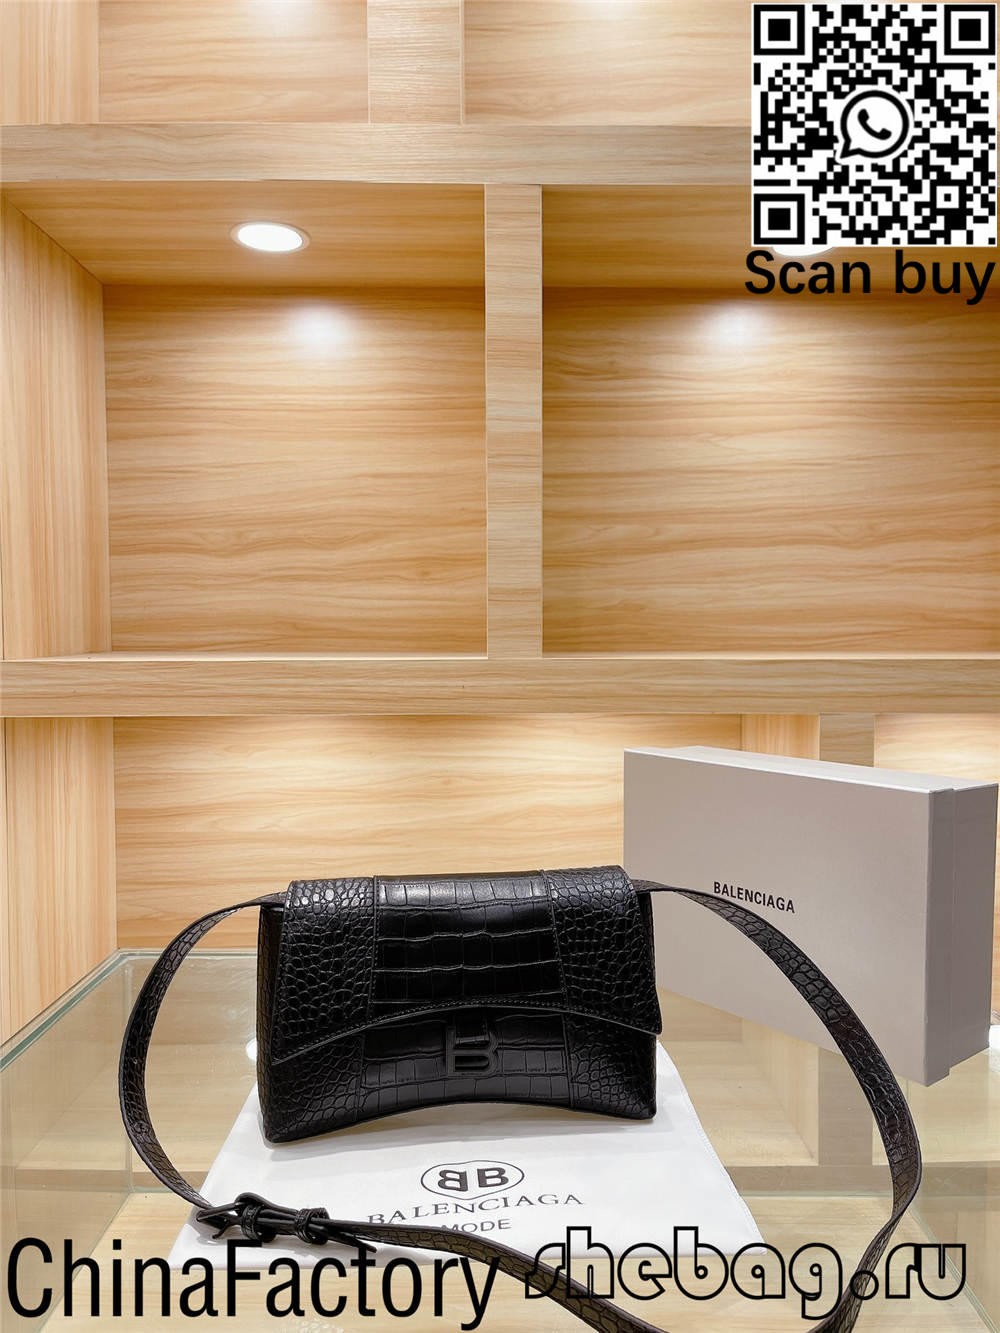 Como comprar réplicas de bolsos Balenciaga baratos en Hong Kong? (Actualizado 2022) - Tenda en liña de bolsas Louis Vuitton falsas de mellor calidade, réplica de bolsas de deseño ru